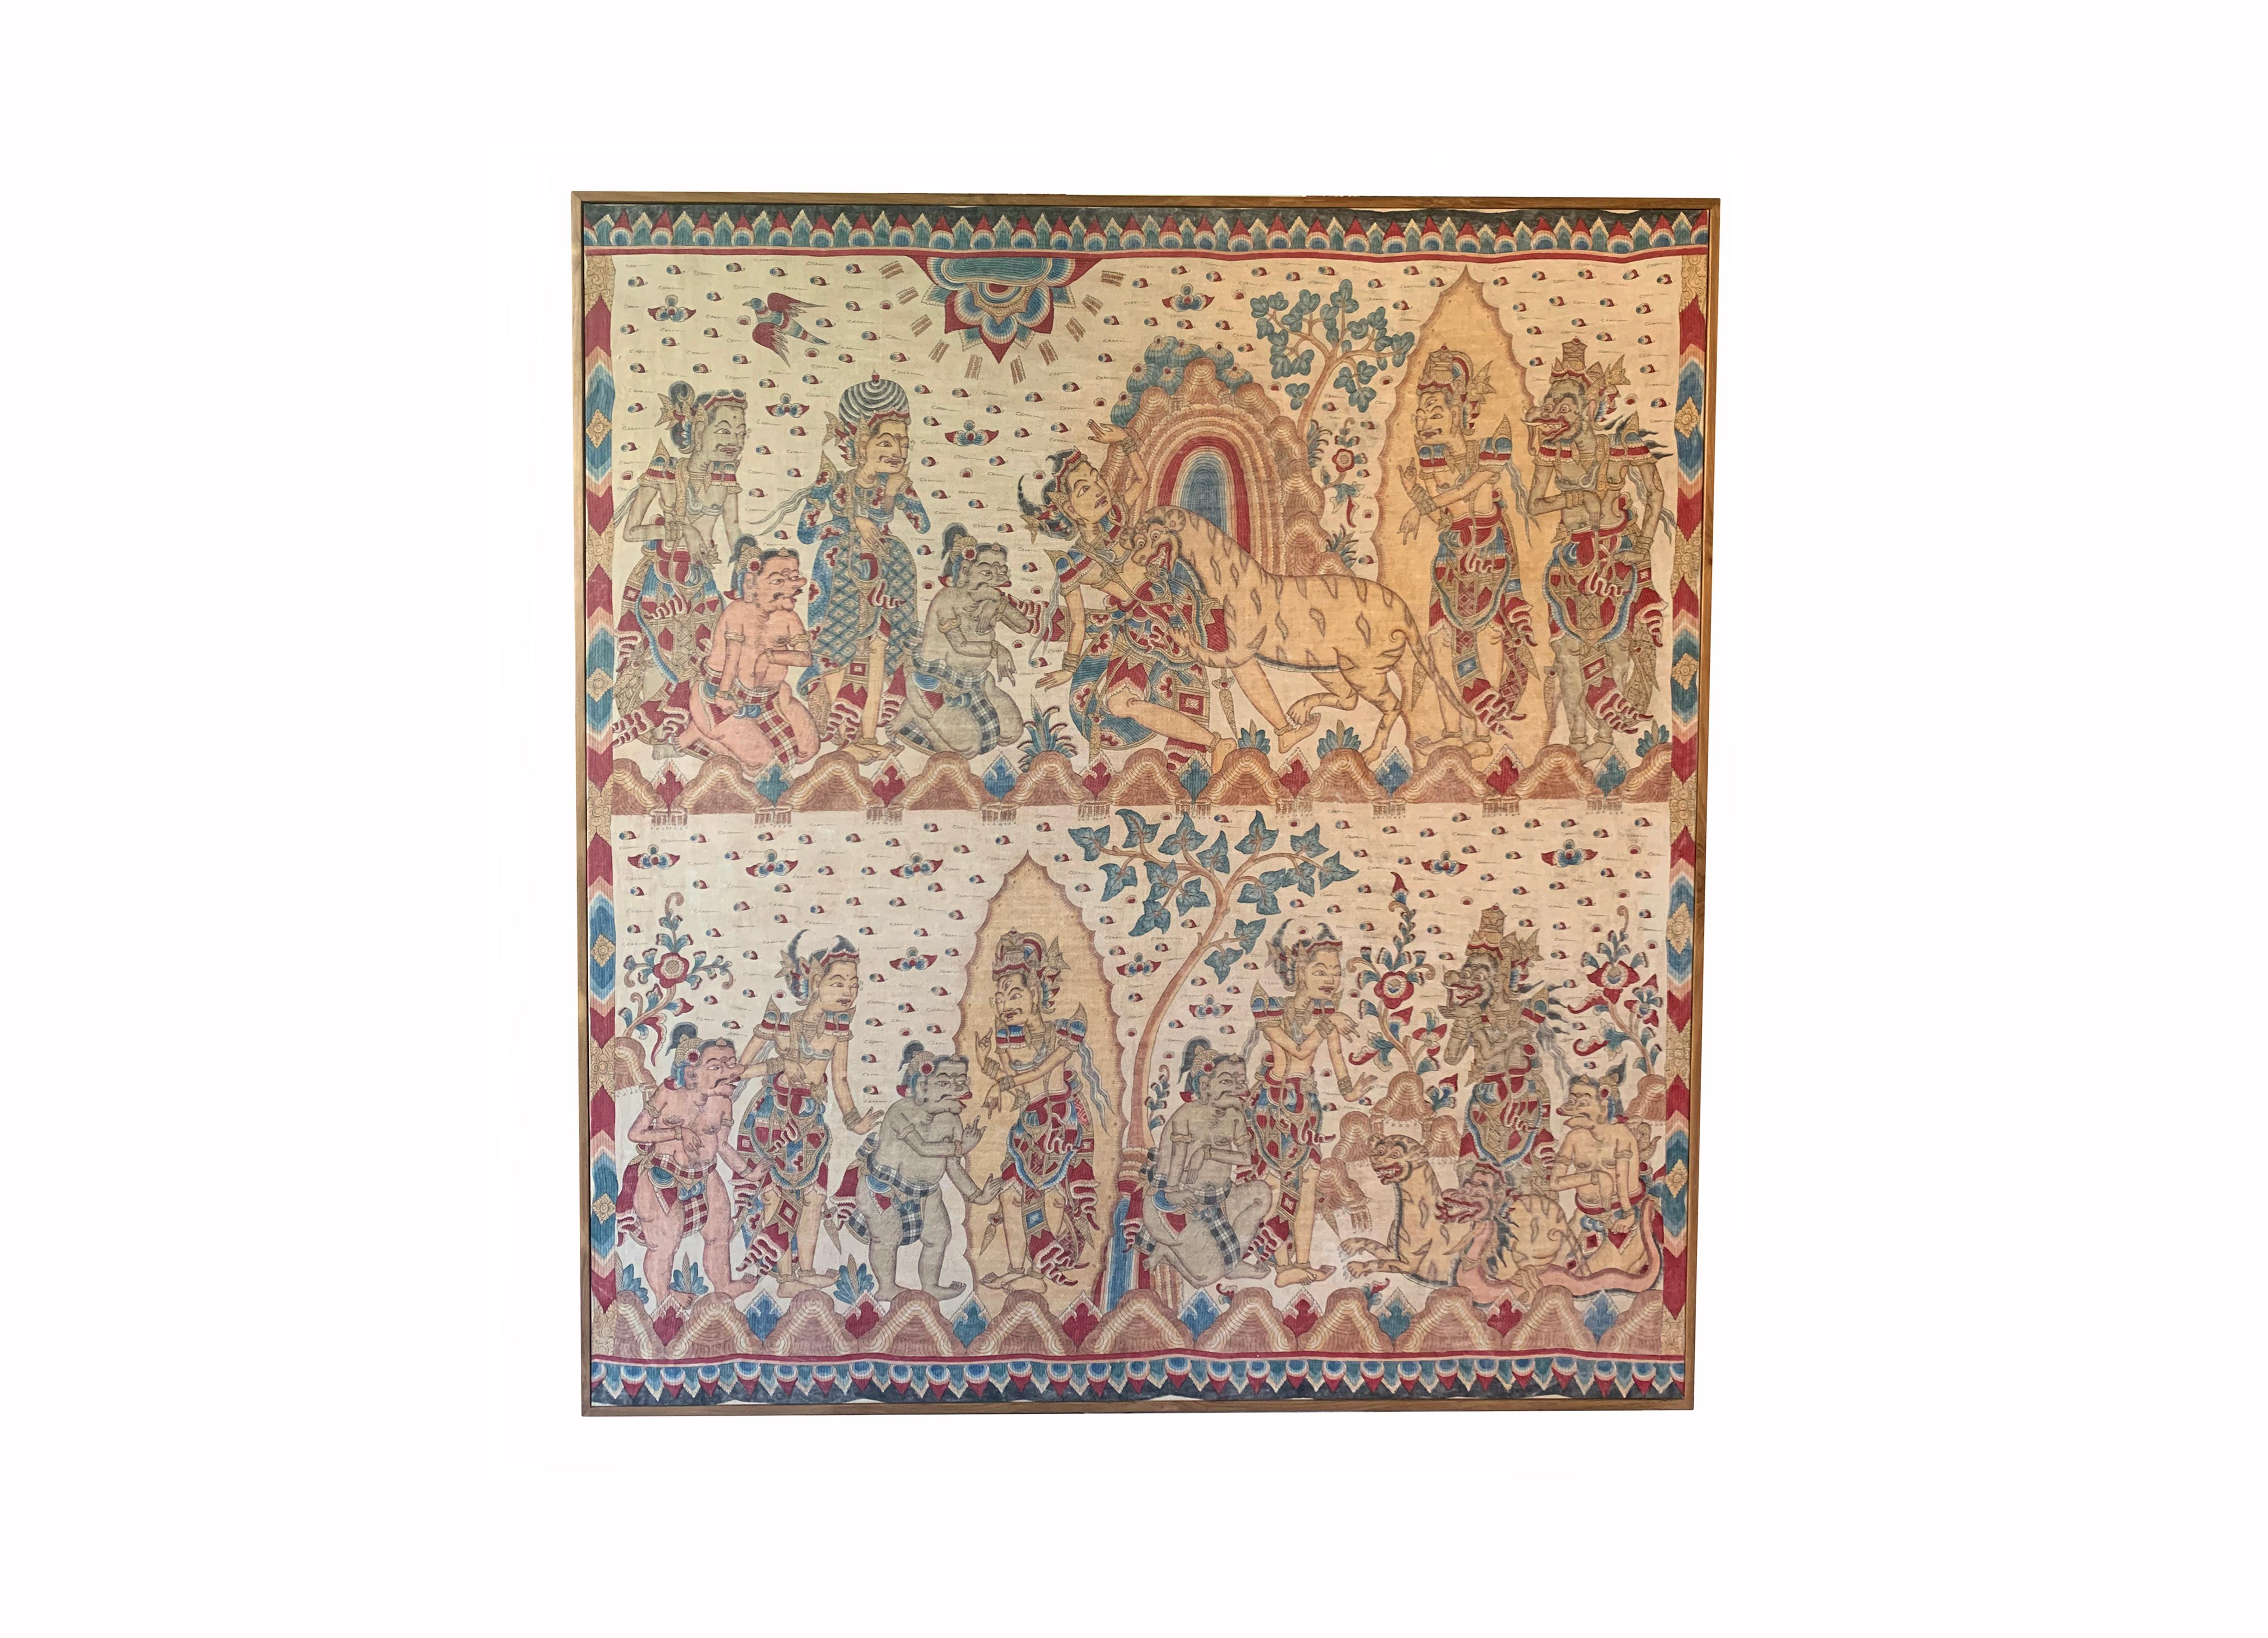 Ein Kamasan-Textilbild aus der Mitte des 20. Jahrhunderts aus Bali, Indonesien. Das handgemalte Bild ist sehr detailliert und stellt die balinesische Hindu-Mythologie dar. Hauptmerkmale dieses Bildes sind der große Tiger und der 